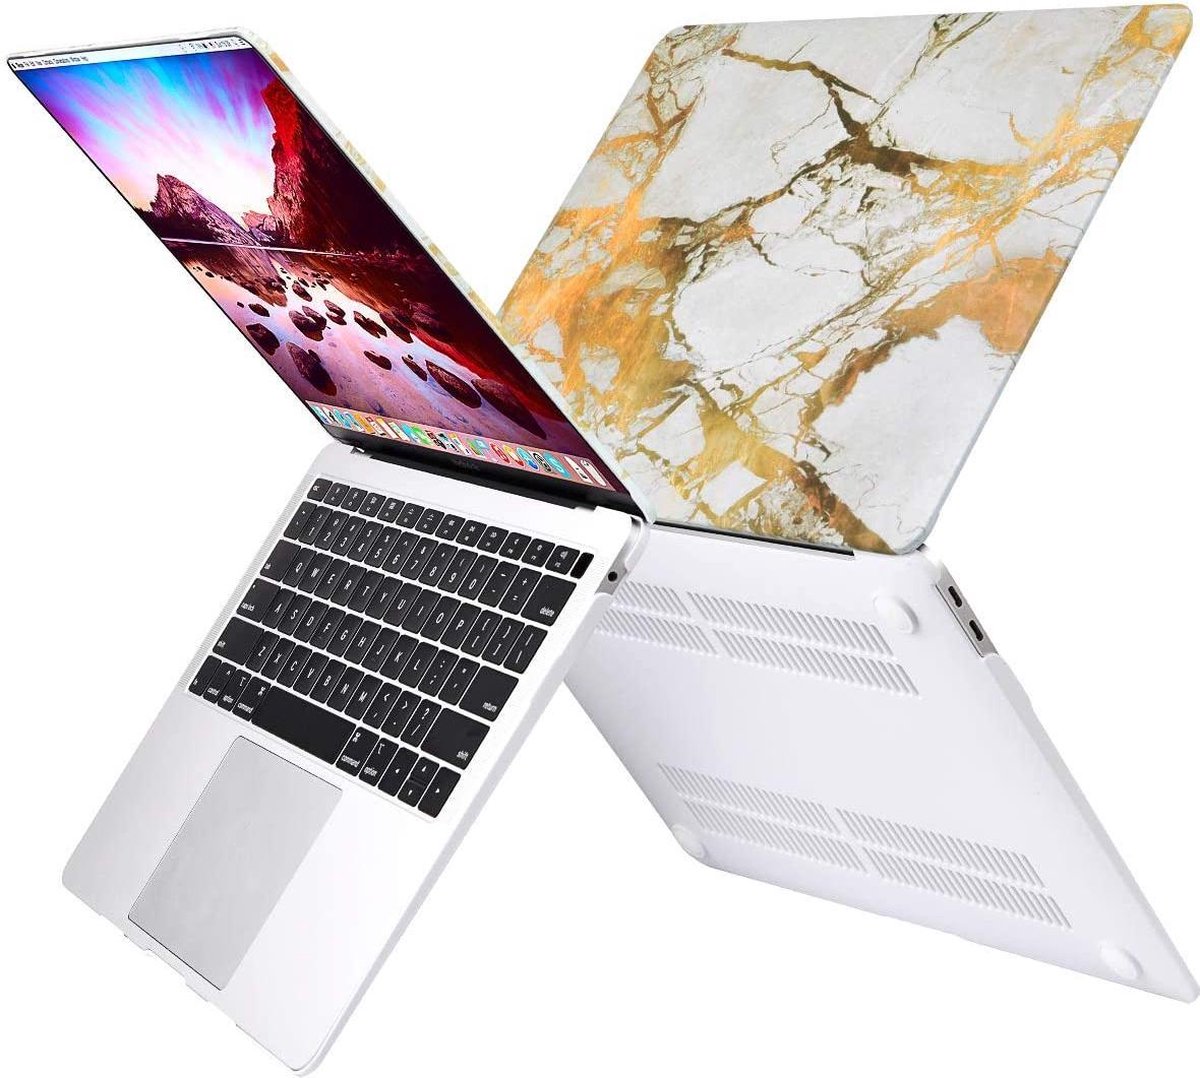 MacBook Air 13 inch Case - 2020 / 2019 / 2018 - A2337 M1 - A2179 - A1932 Retina Display met Touch ID - Beschermende Plastic Hard Cover - MacBook Air 13.3 Hoes - Nieuwe MacBook Case / Cover / Hoes / Sleeve